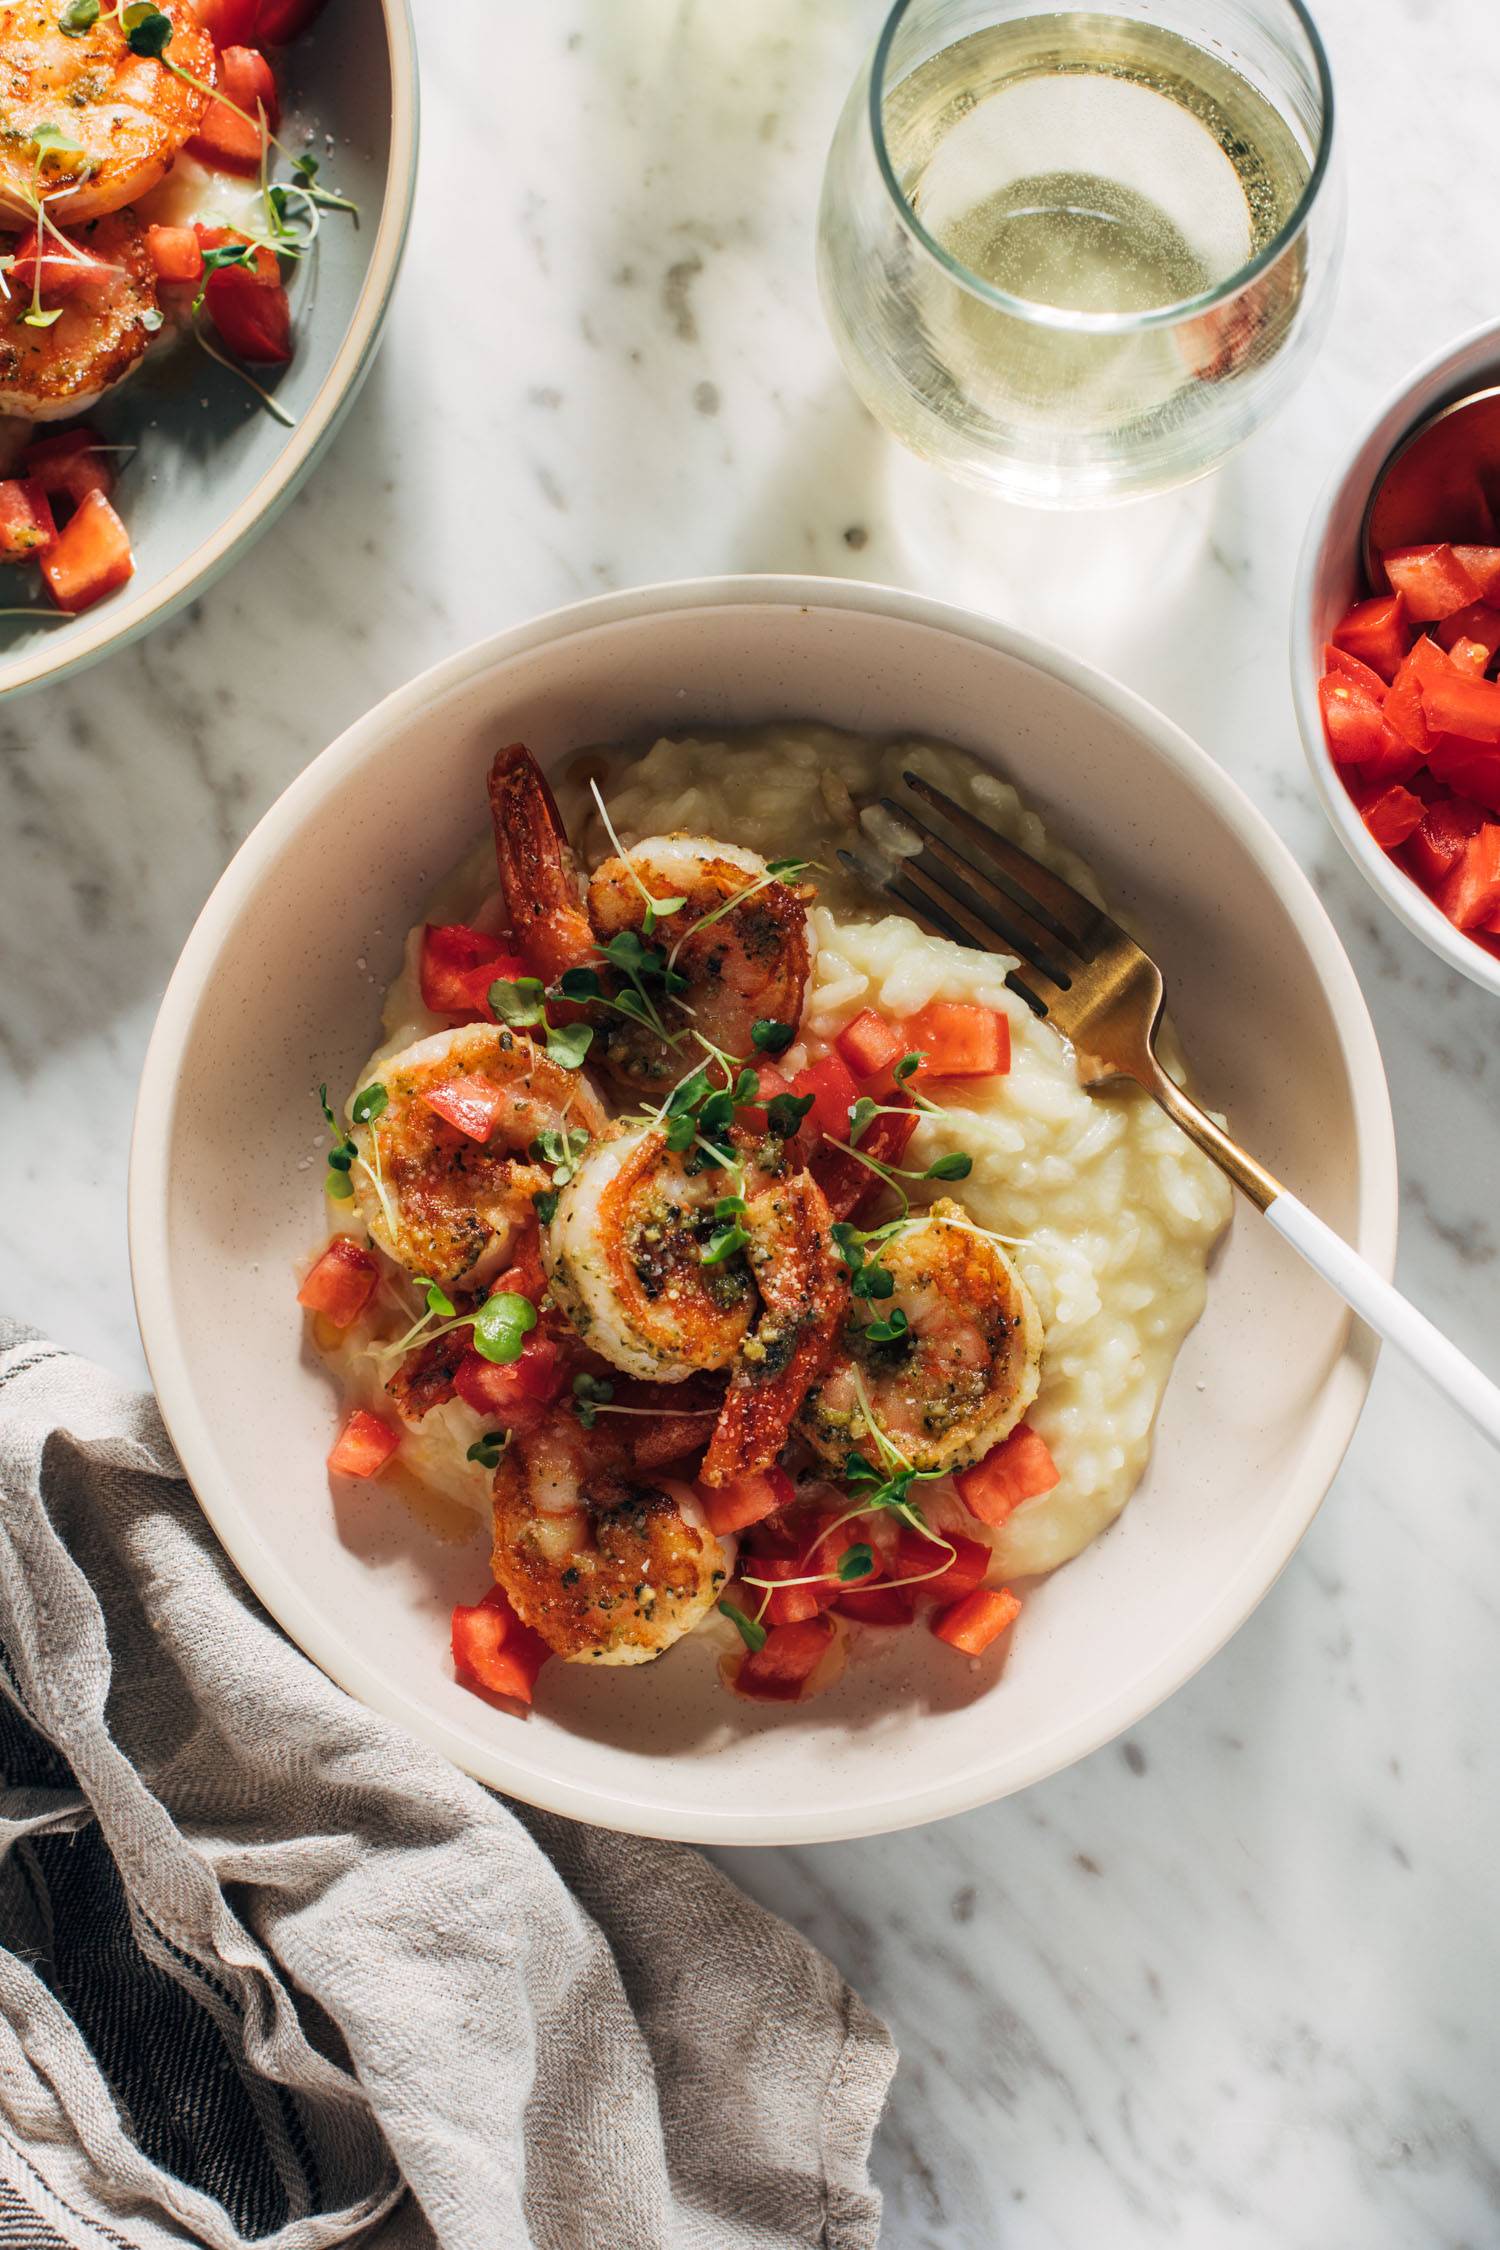 Crevettes nuisibles dans un bol avec du risotto et une fourchette et un verre de vin blanc sur le côté